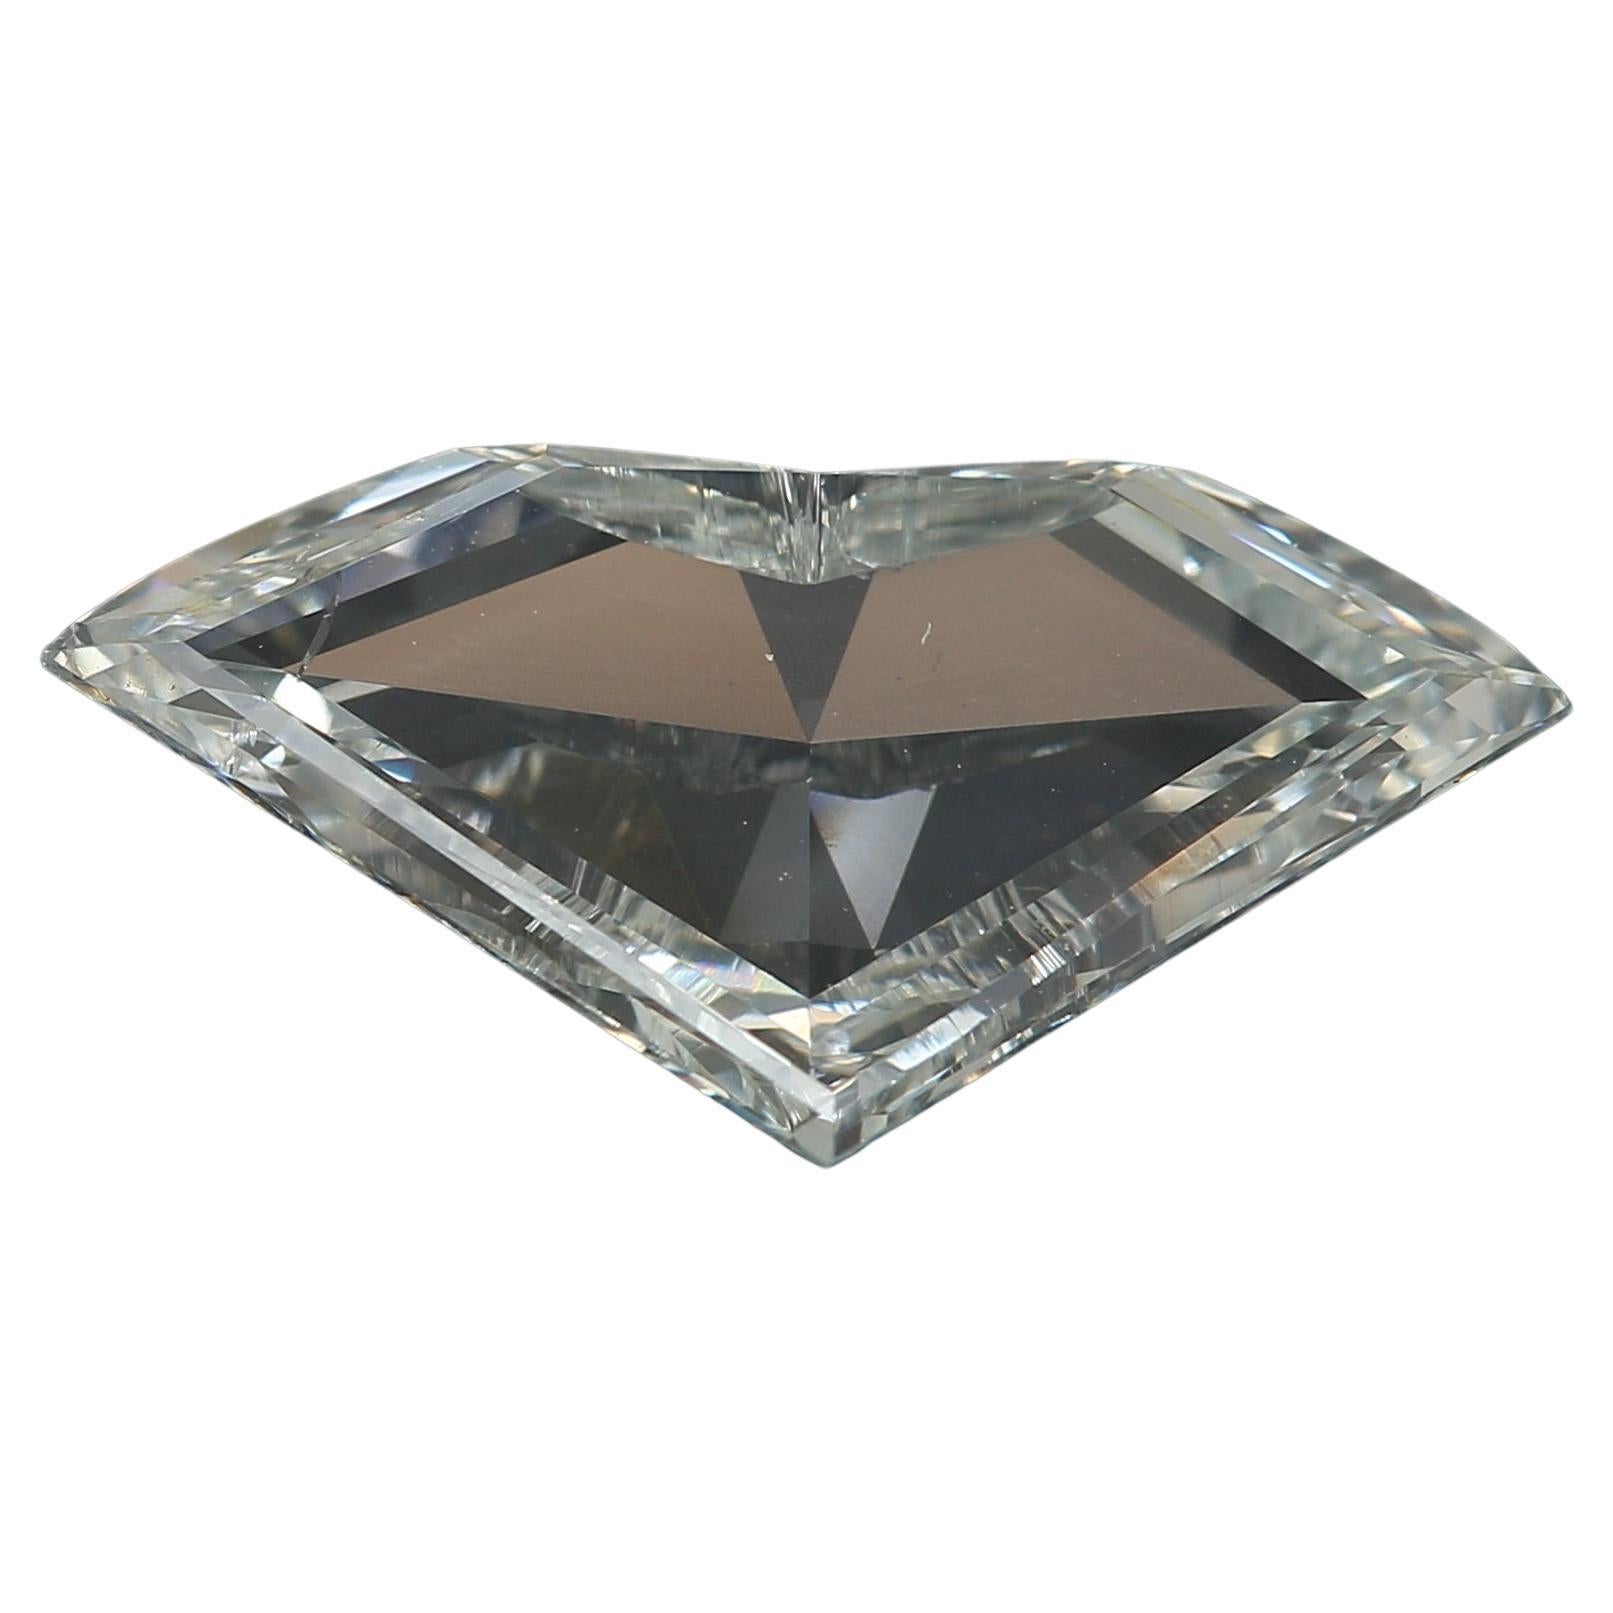 2.24 Carat Shield Cut Diamond I1 Clarity GIA Certified